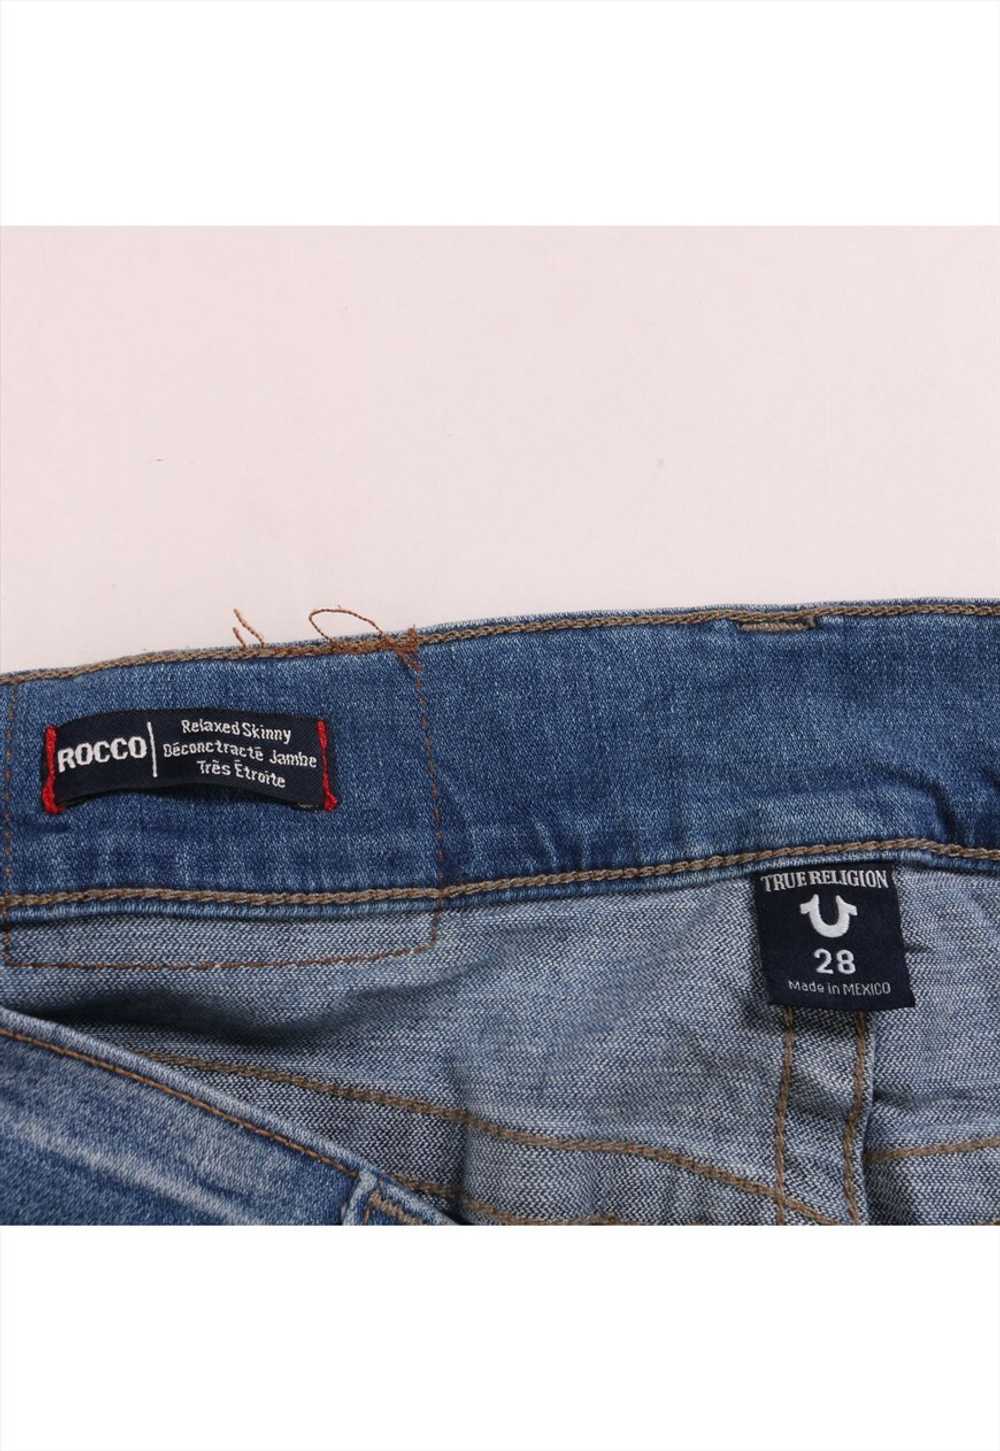 Vintage 90's True Religion Jeans / Pants Super Bi… - image 3